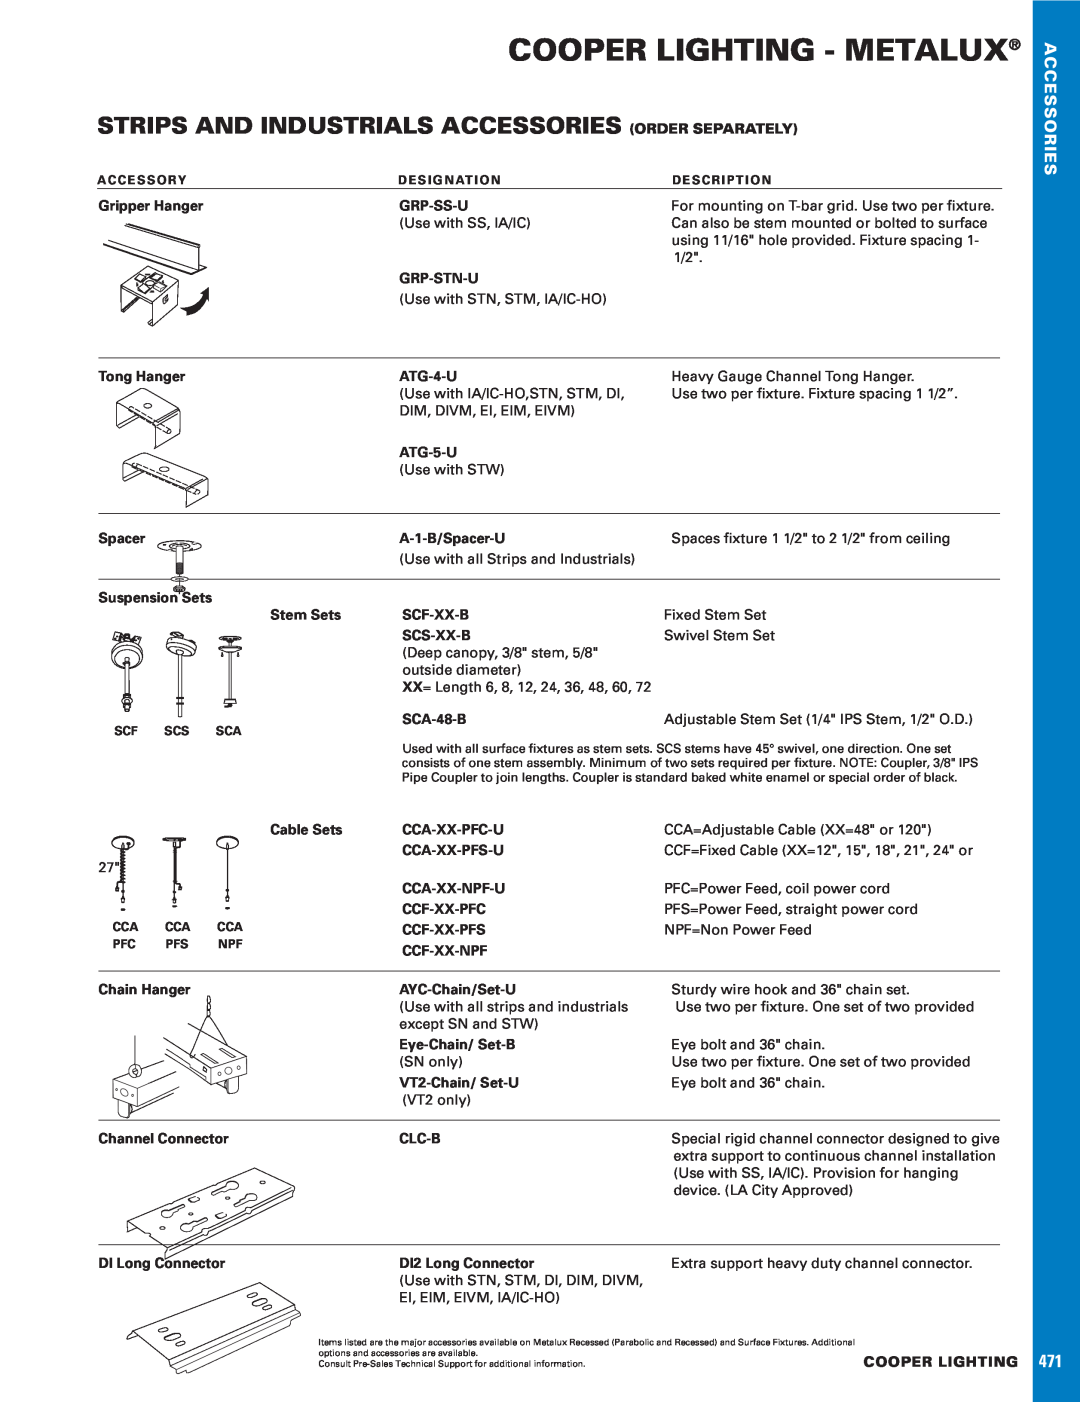 Cooper Lighting 471 manual Cooper Lighting - Metalux, Accessories 